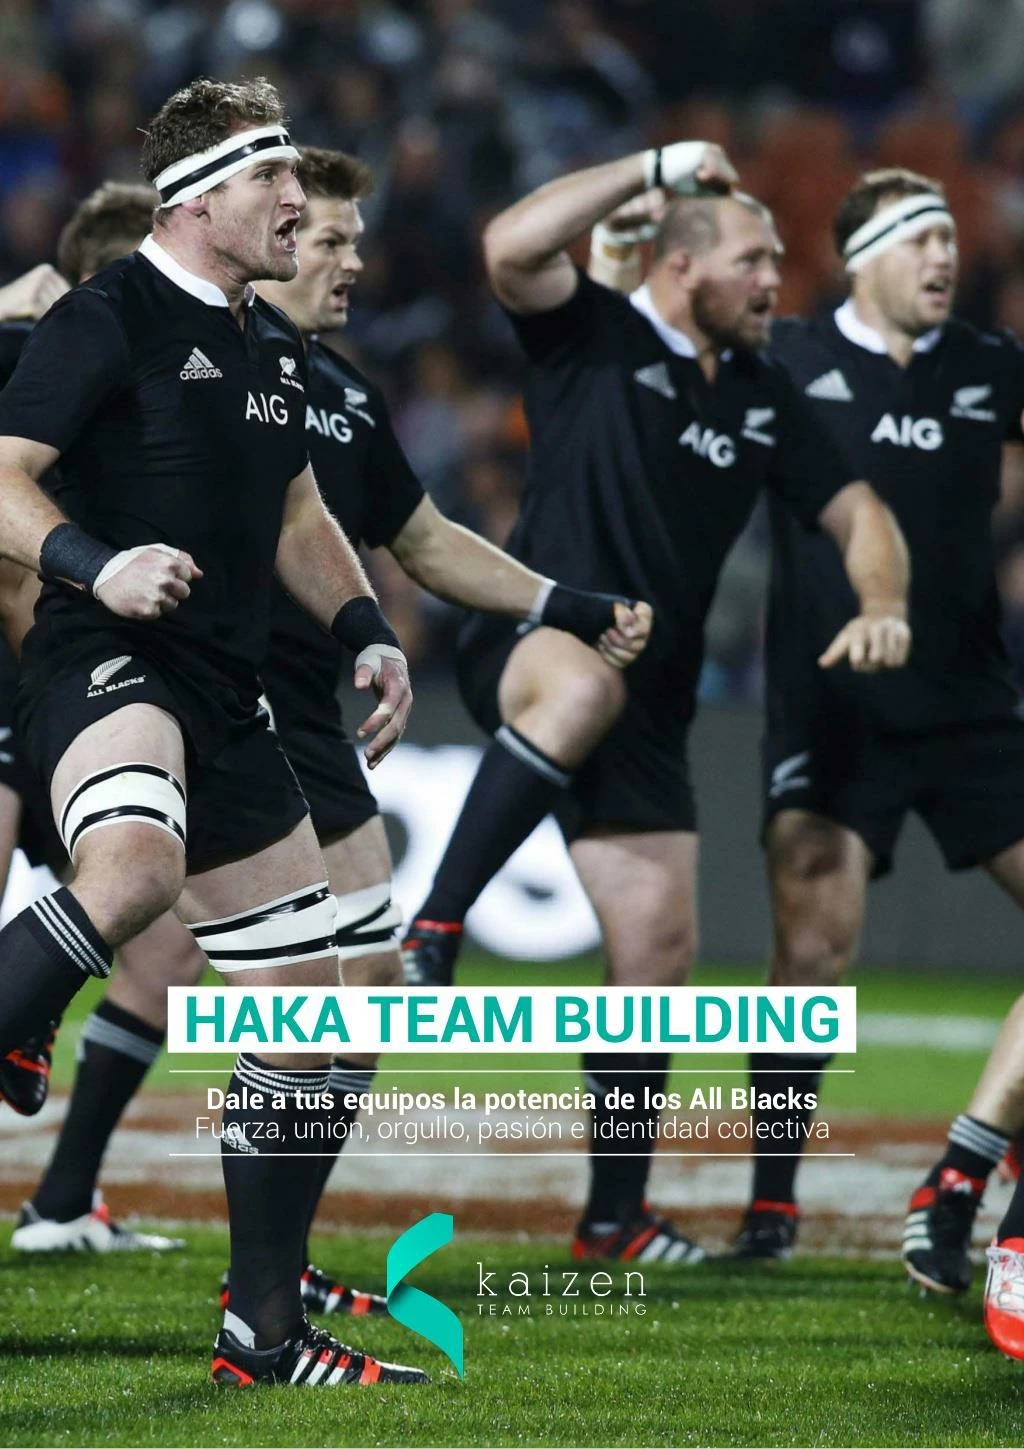 haka team building dale a tu equipo la potencia de los all blacks